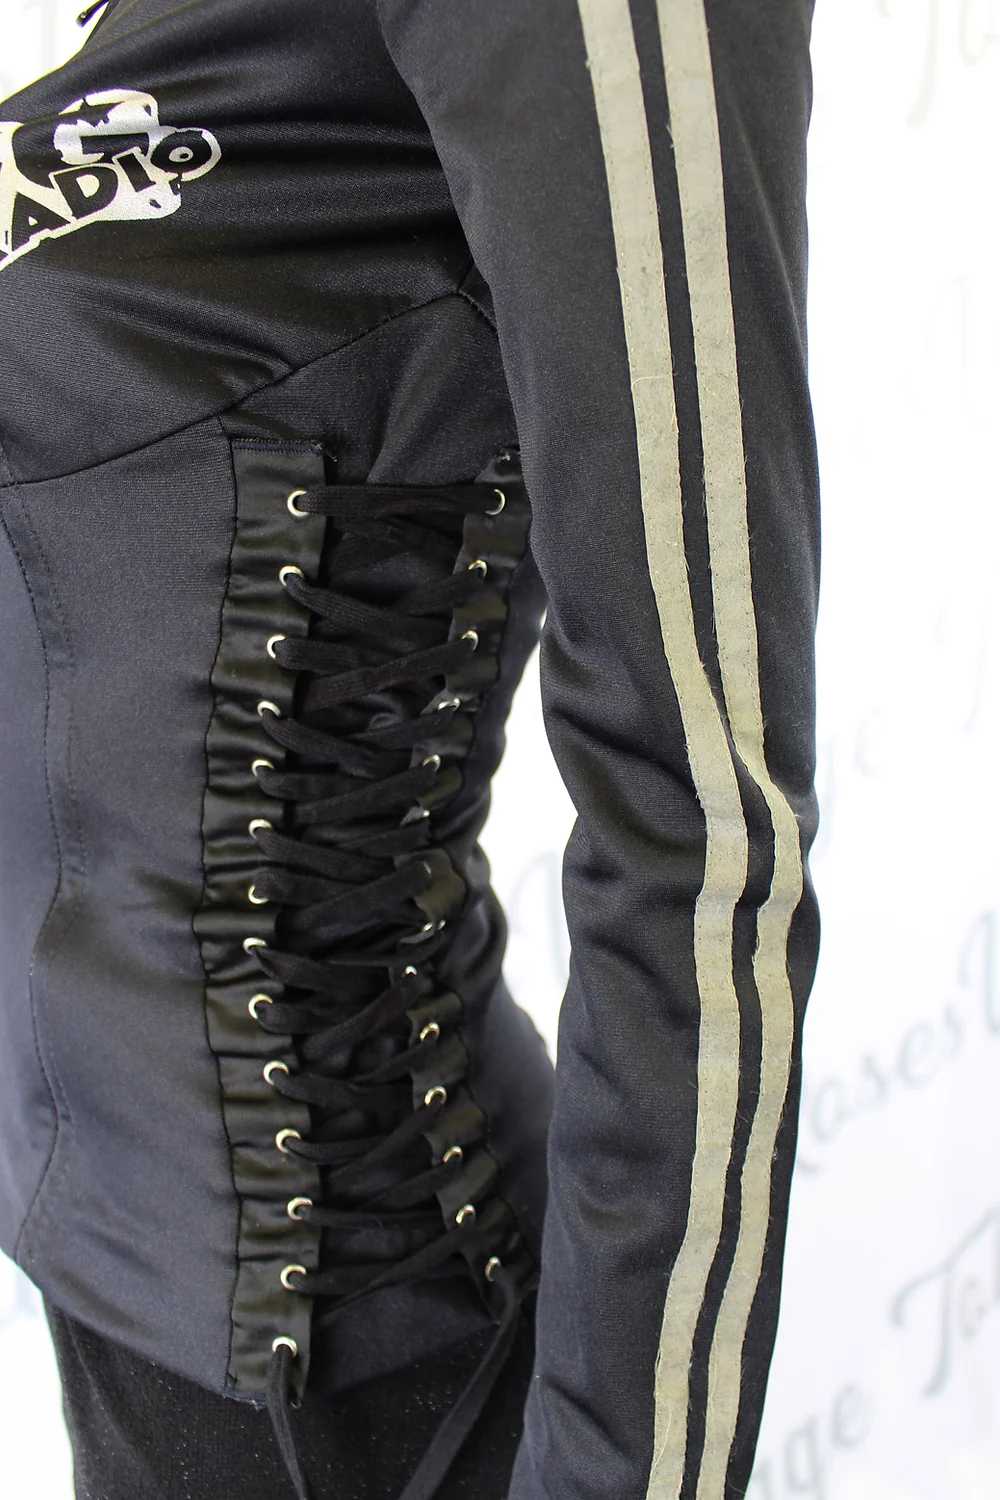 Dolce & Gabbana Black Corset Lace Up Jacket - image 6